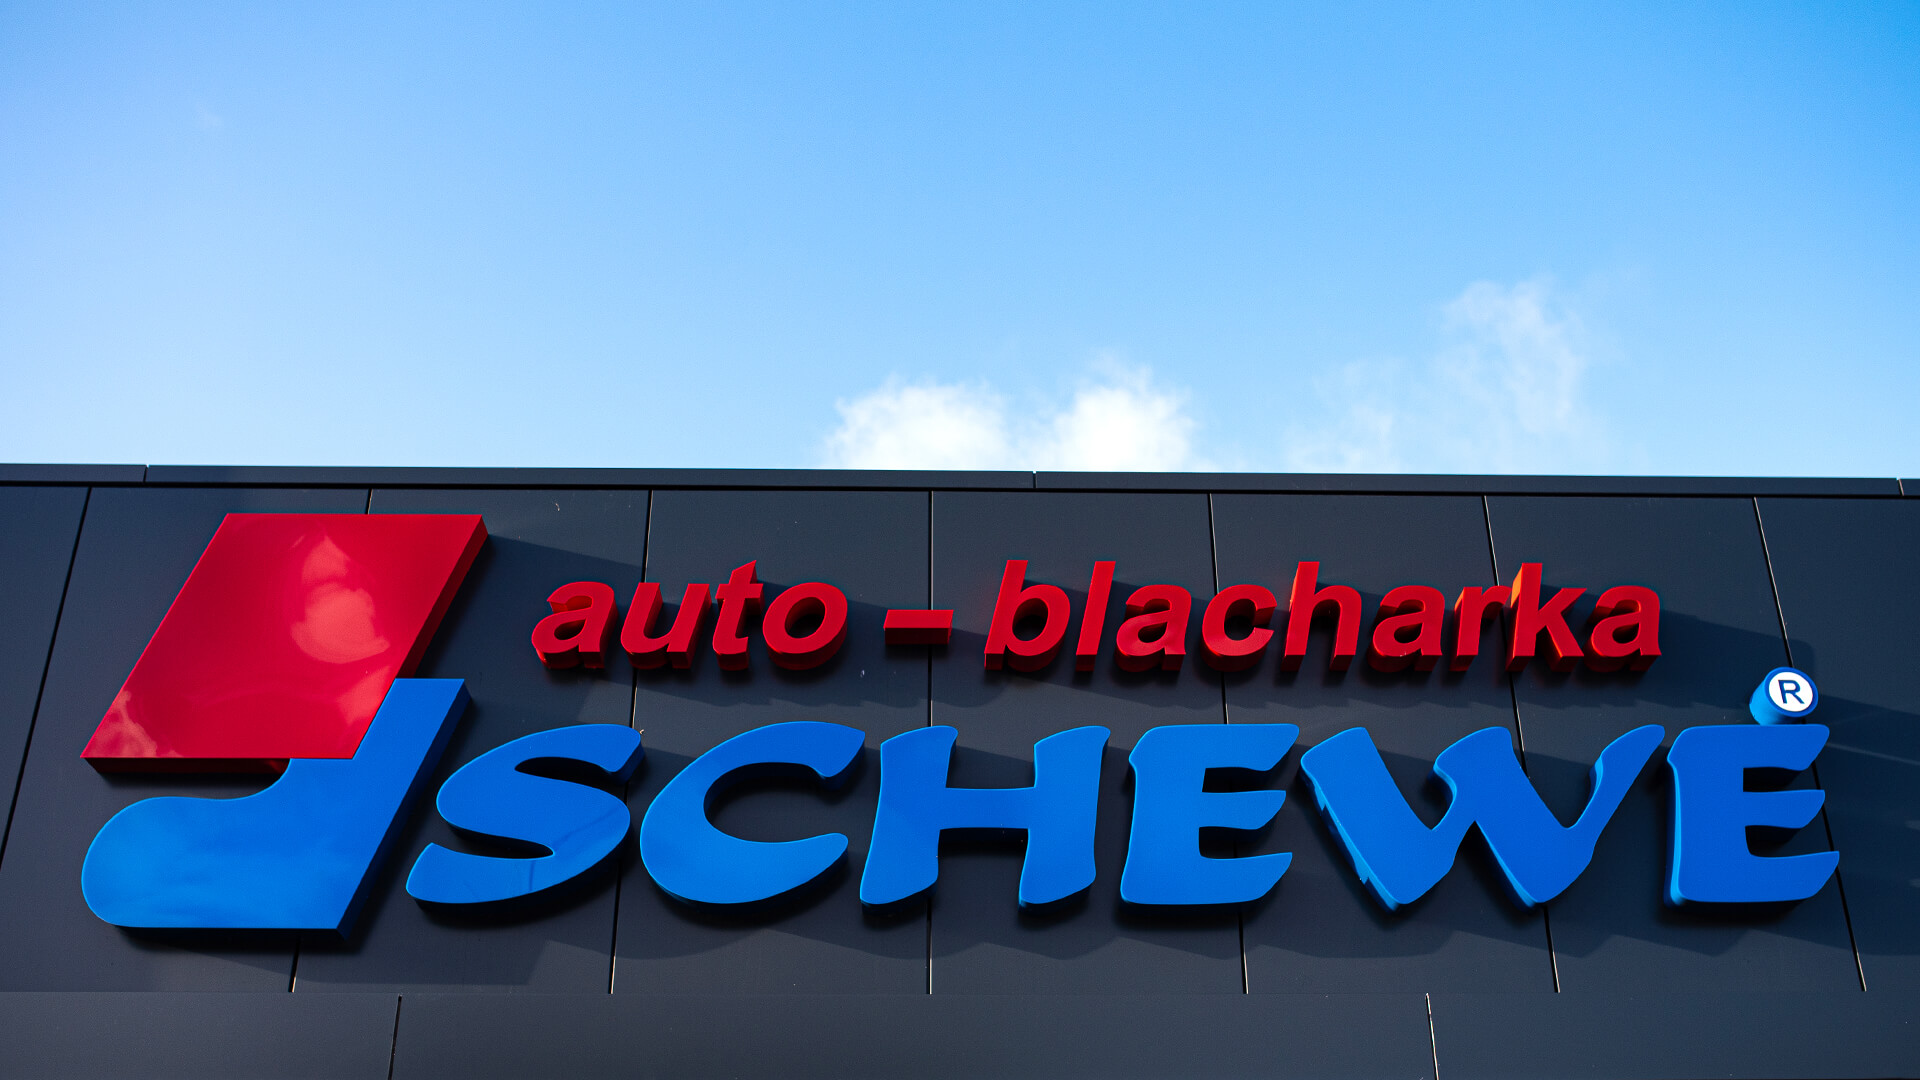 Auto blacharka Schewe - Letras de colores, espaciales, con iluminación LED